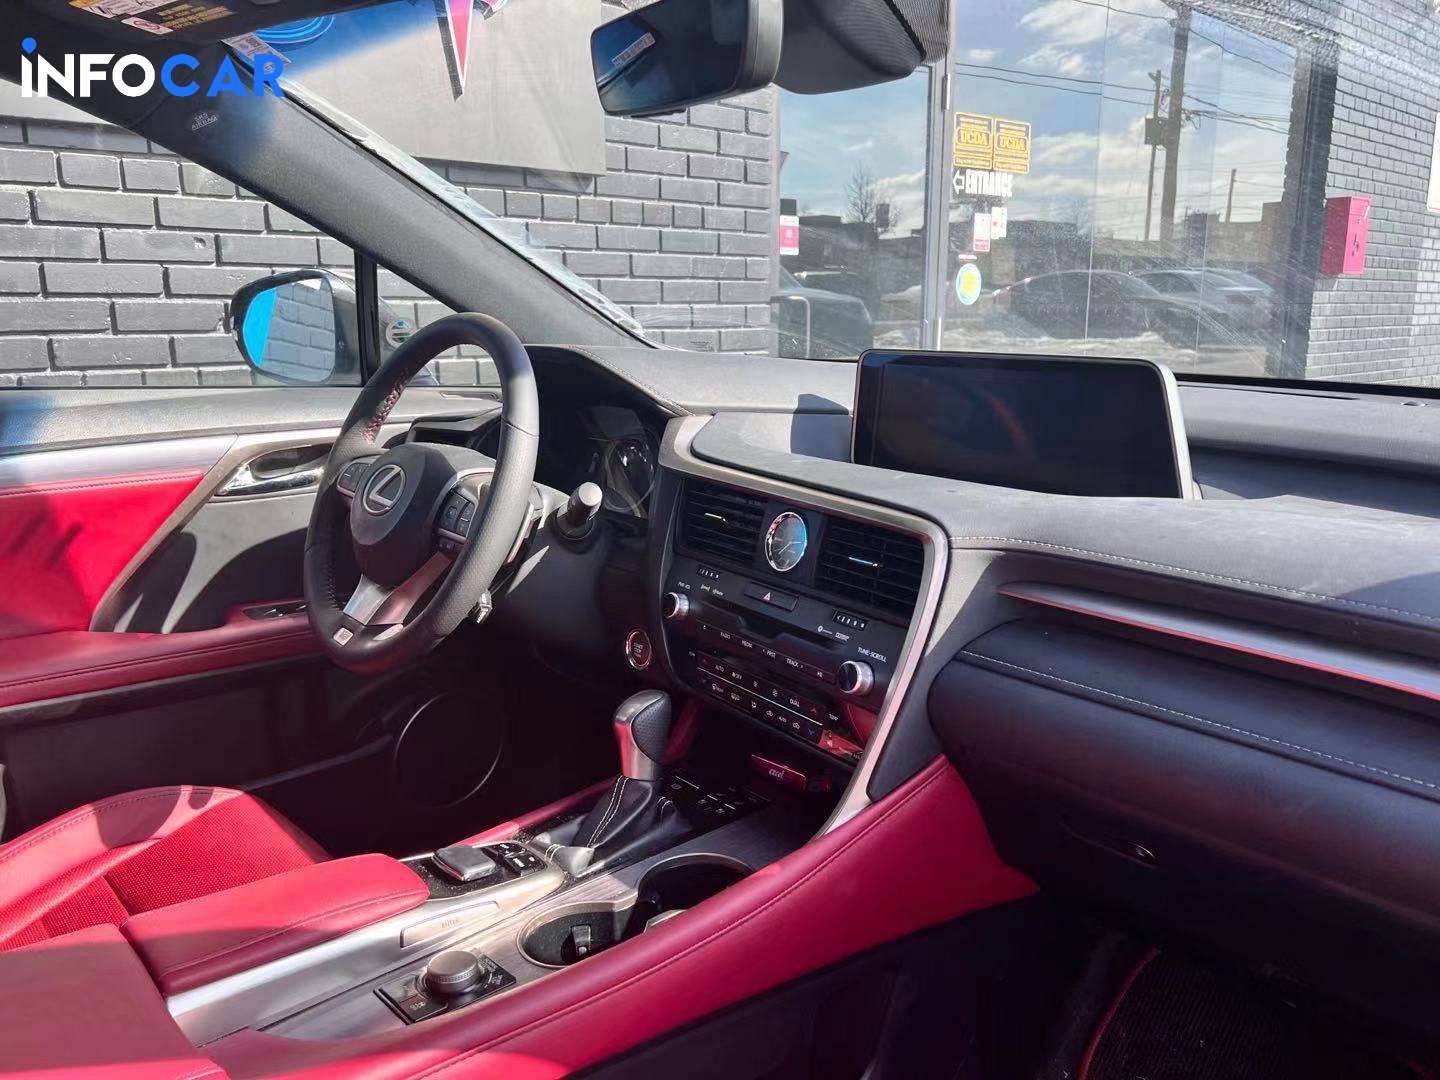 2018 Lexus RX 350 premium - INFOCAR - Toronto Auto Trading Platform